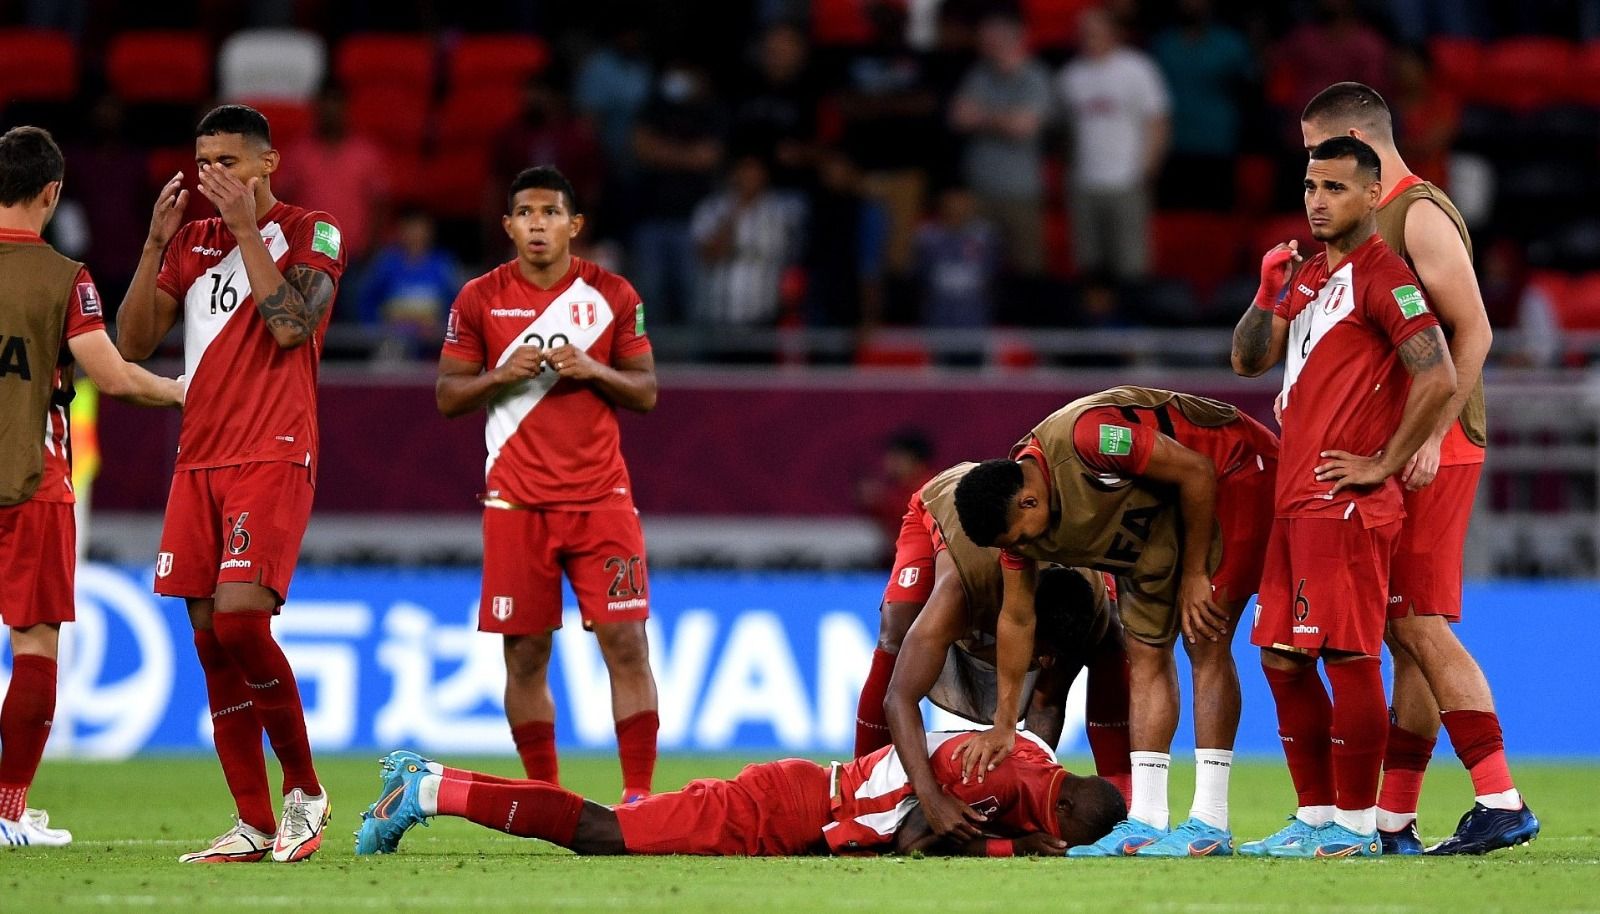 Perú no logra Clasificar al Mundial de Qatar 2022 tras caer en penales ante Australia